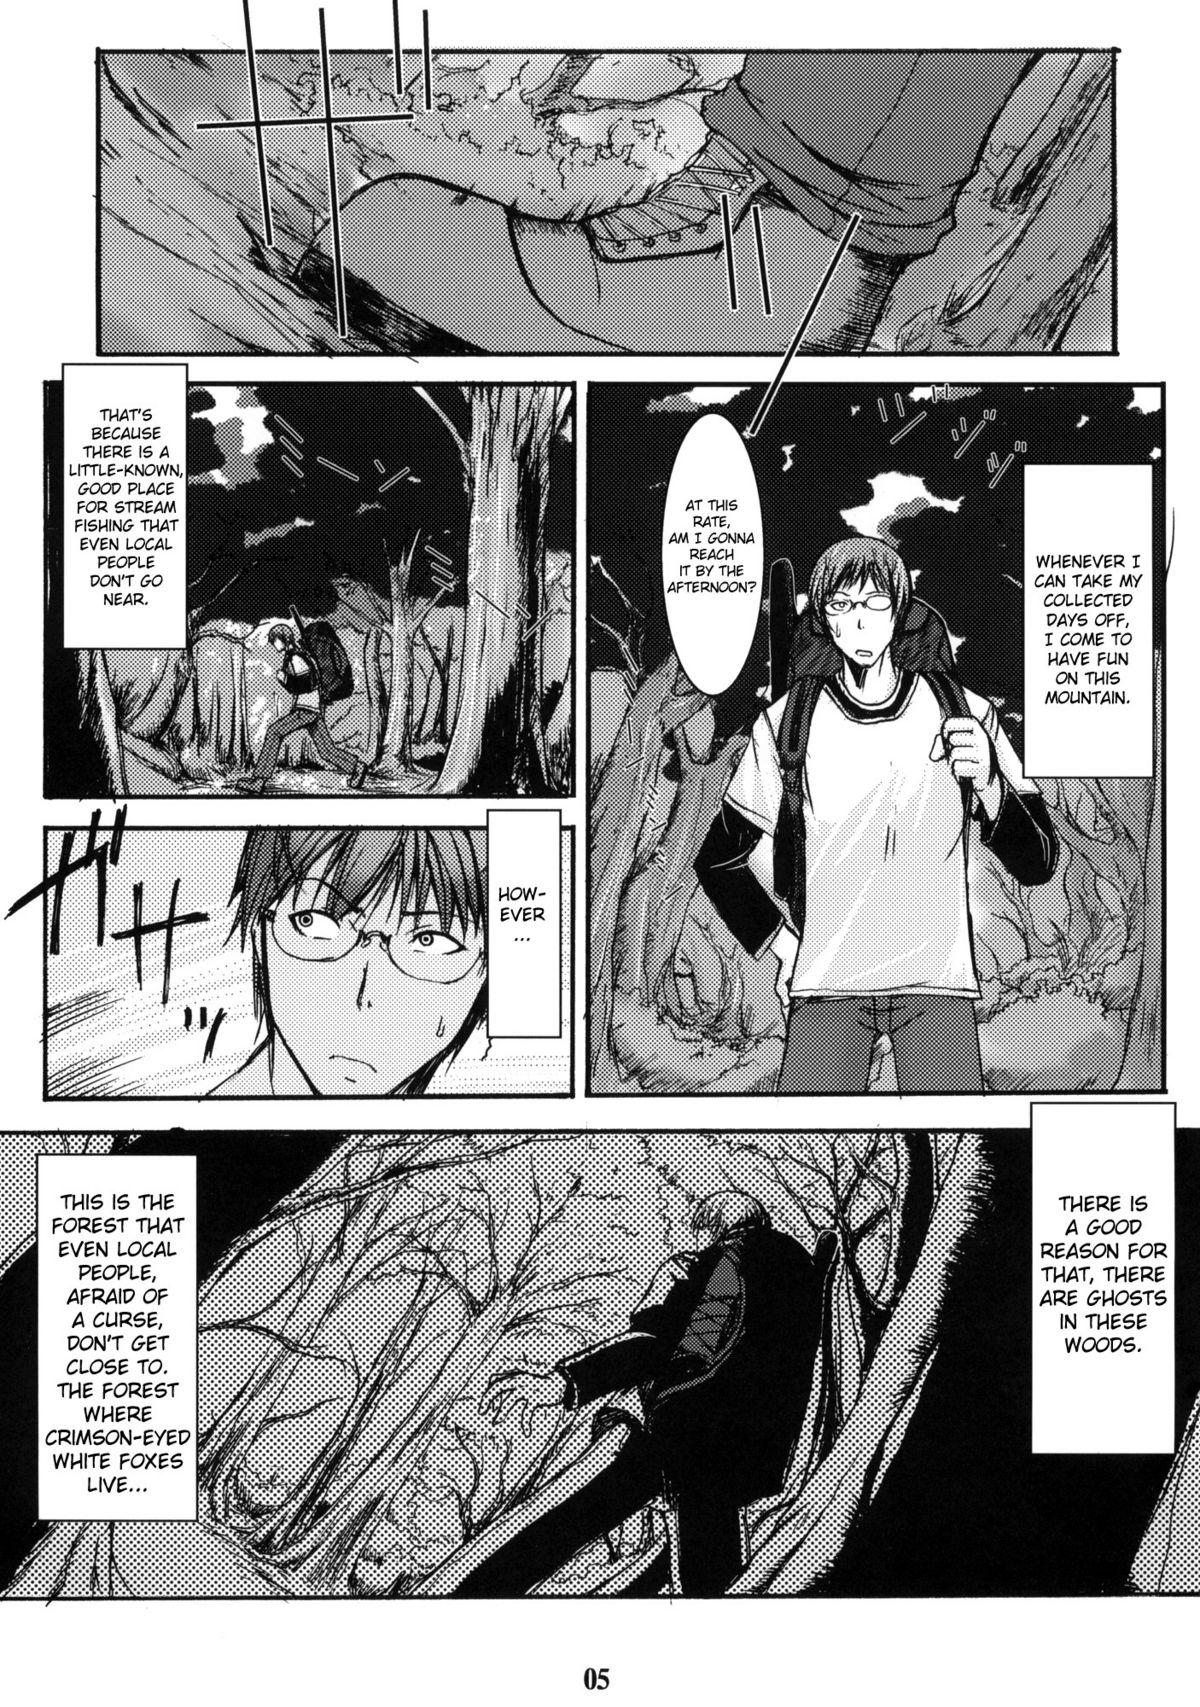 Cogiendo Byakko no Mori Sono Ni Suckingcock - Page 4